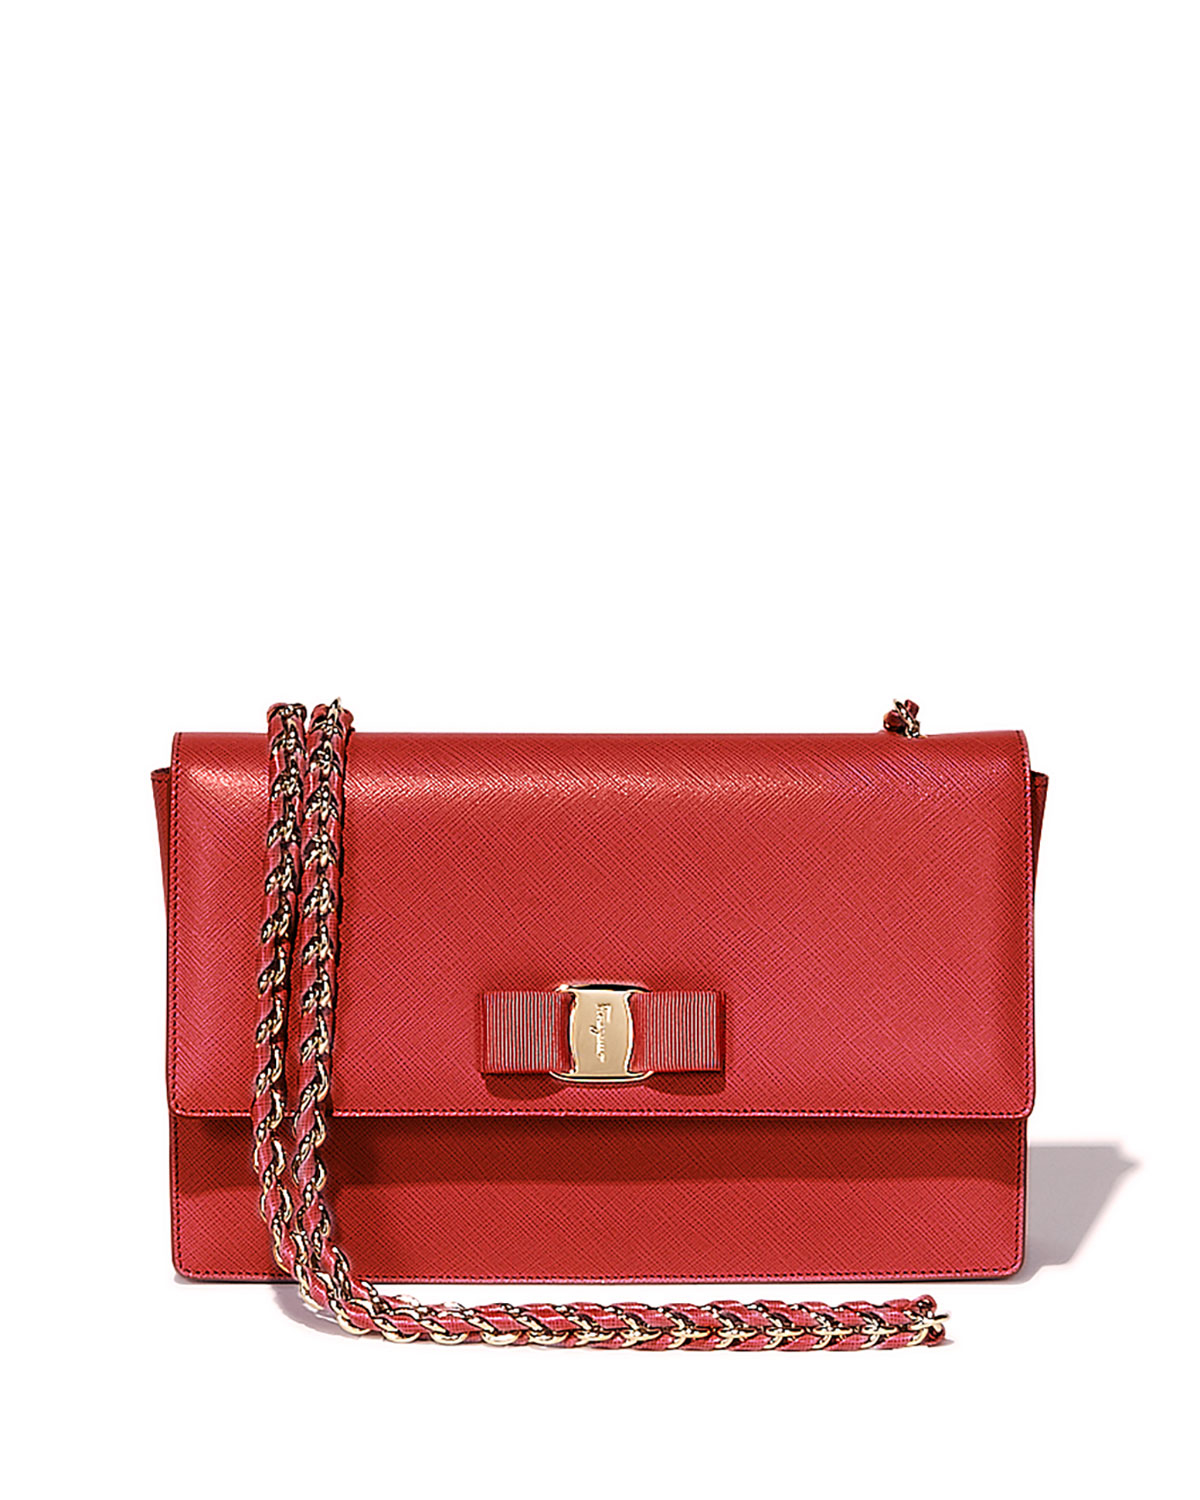 Ferragamo Ginny Vara Medium Crossbody Bag in Red (rosso) | Lyst